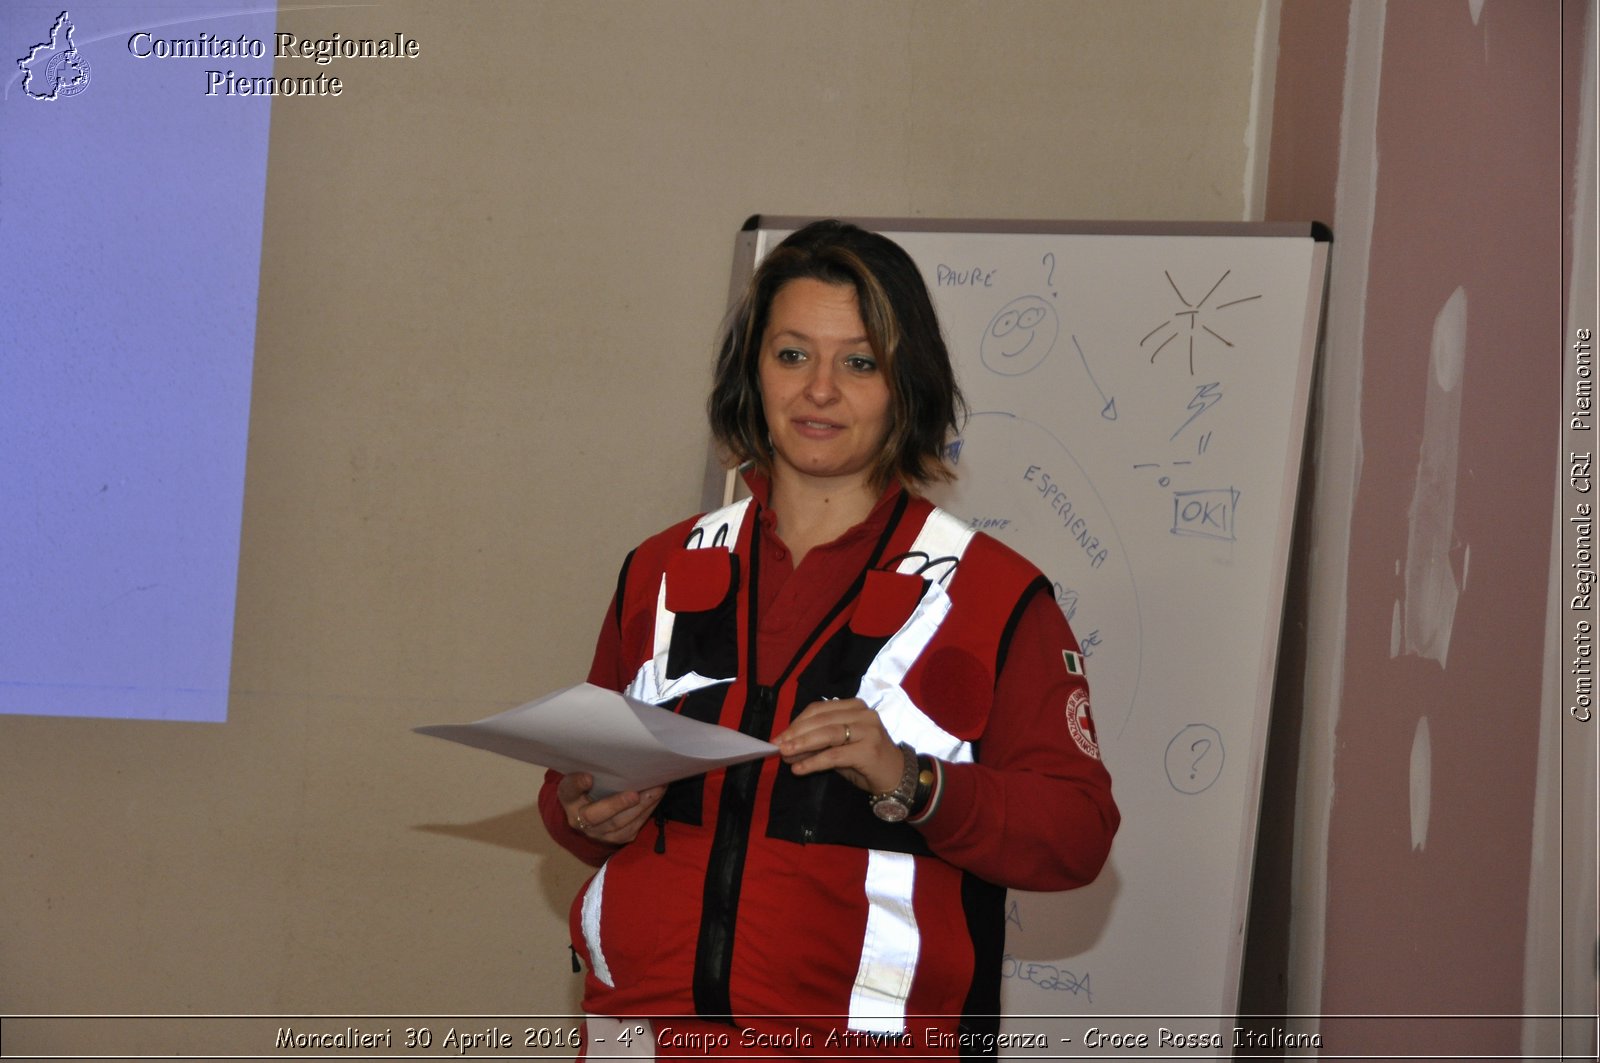 Moncalieri 30 Aprile 2016 - 4 Campo Scuola Attivit Emergenza - Croce Rossa Italiana- Comitato Regionale del Piemonte